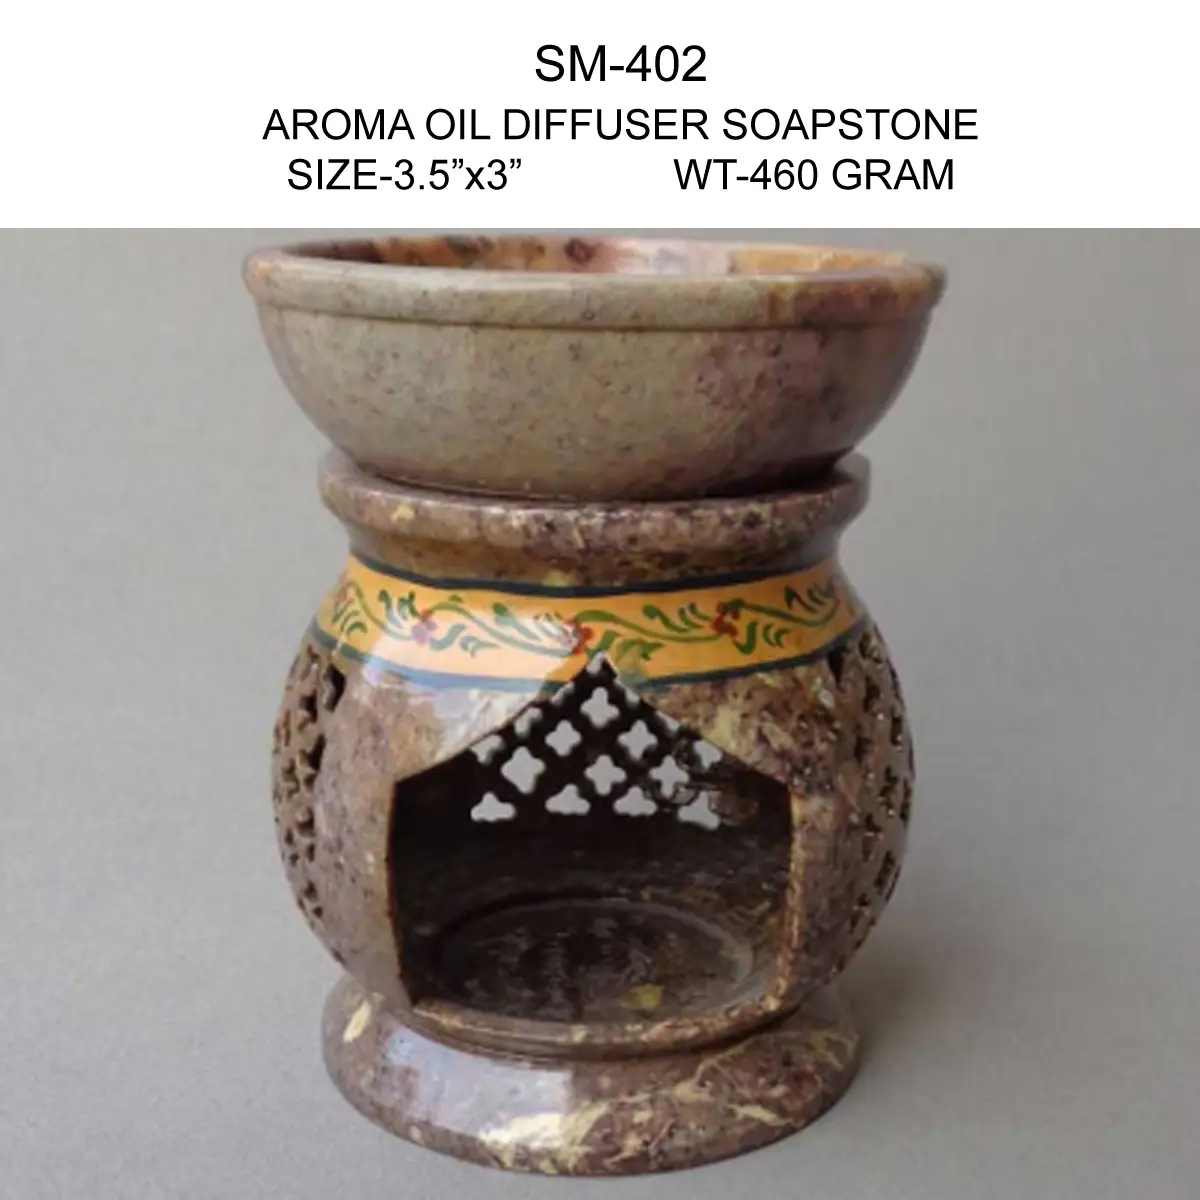 AROMA OIL DIFFUSER SOAPSTONE